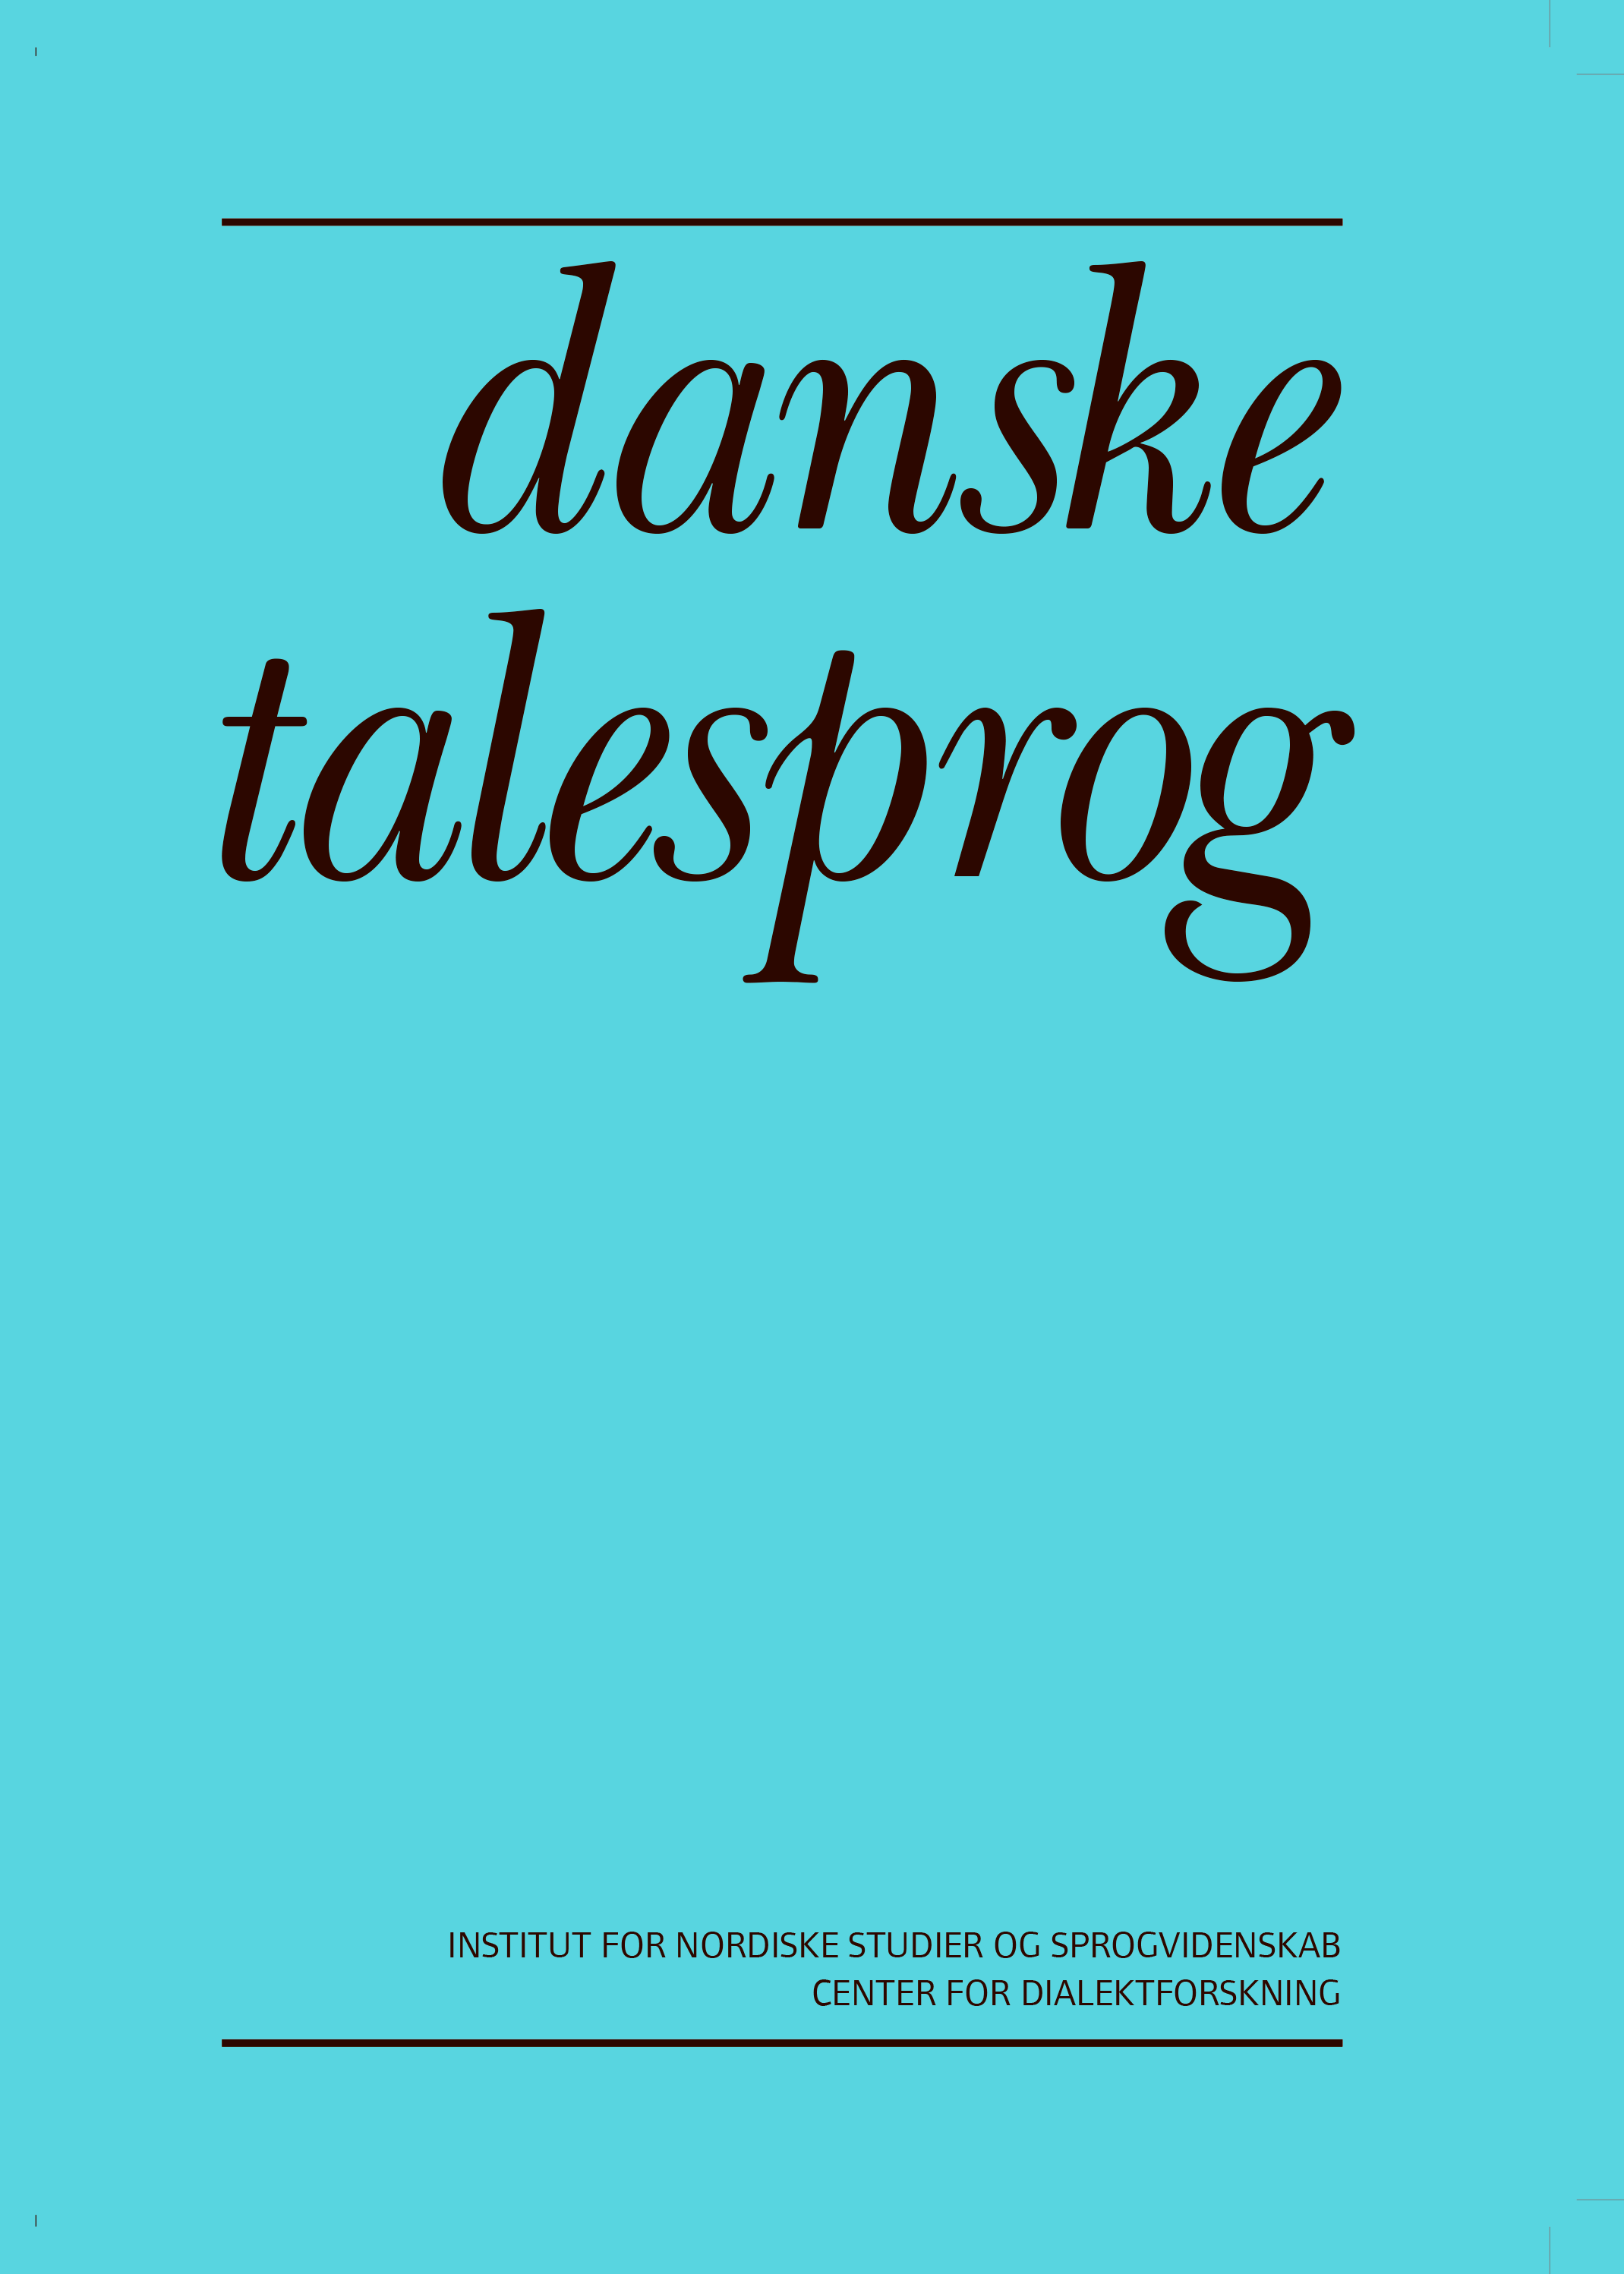 					Se Årg. 20 (2020): Danske Talesprog
				